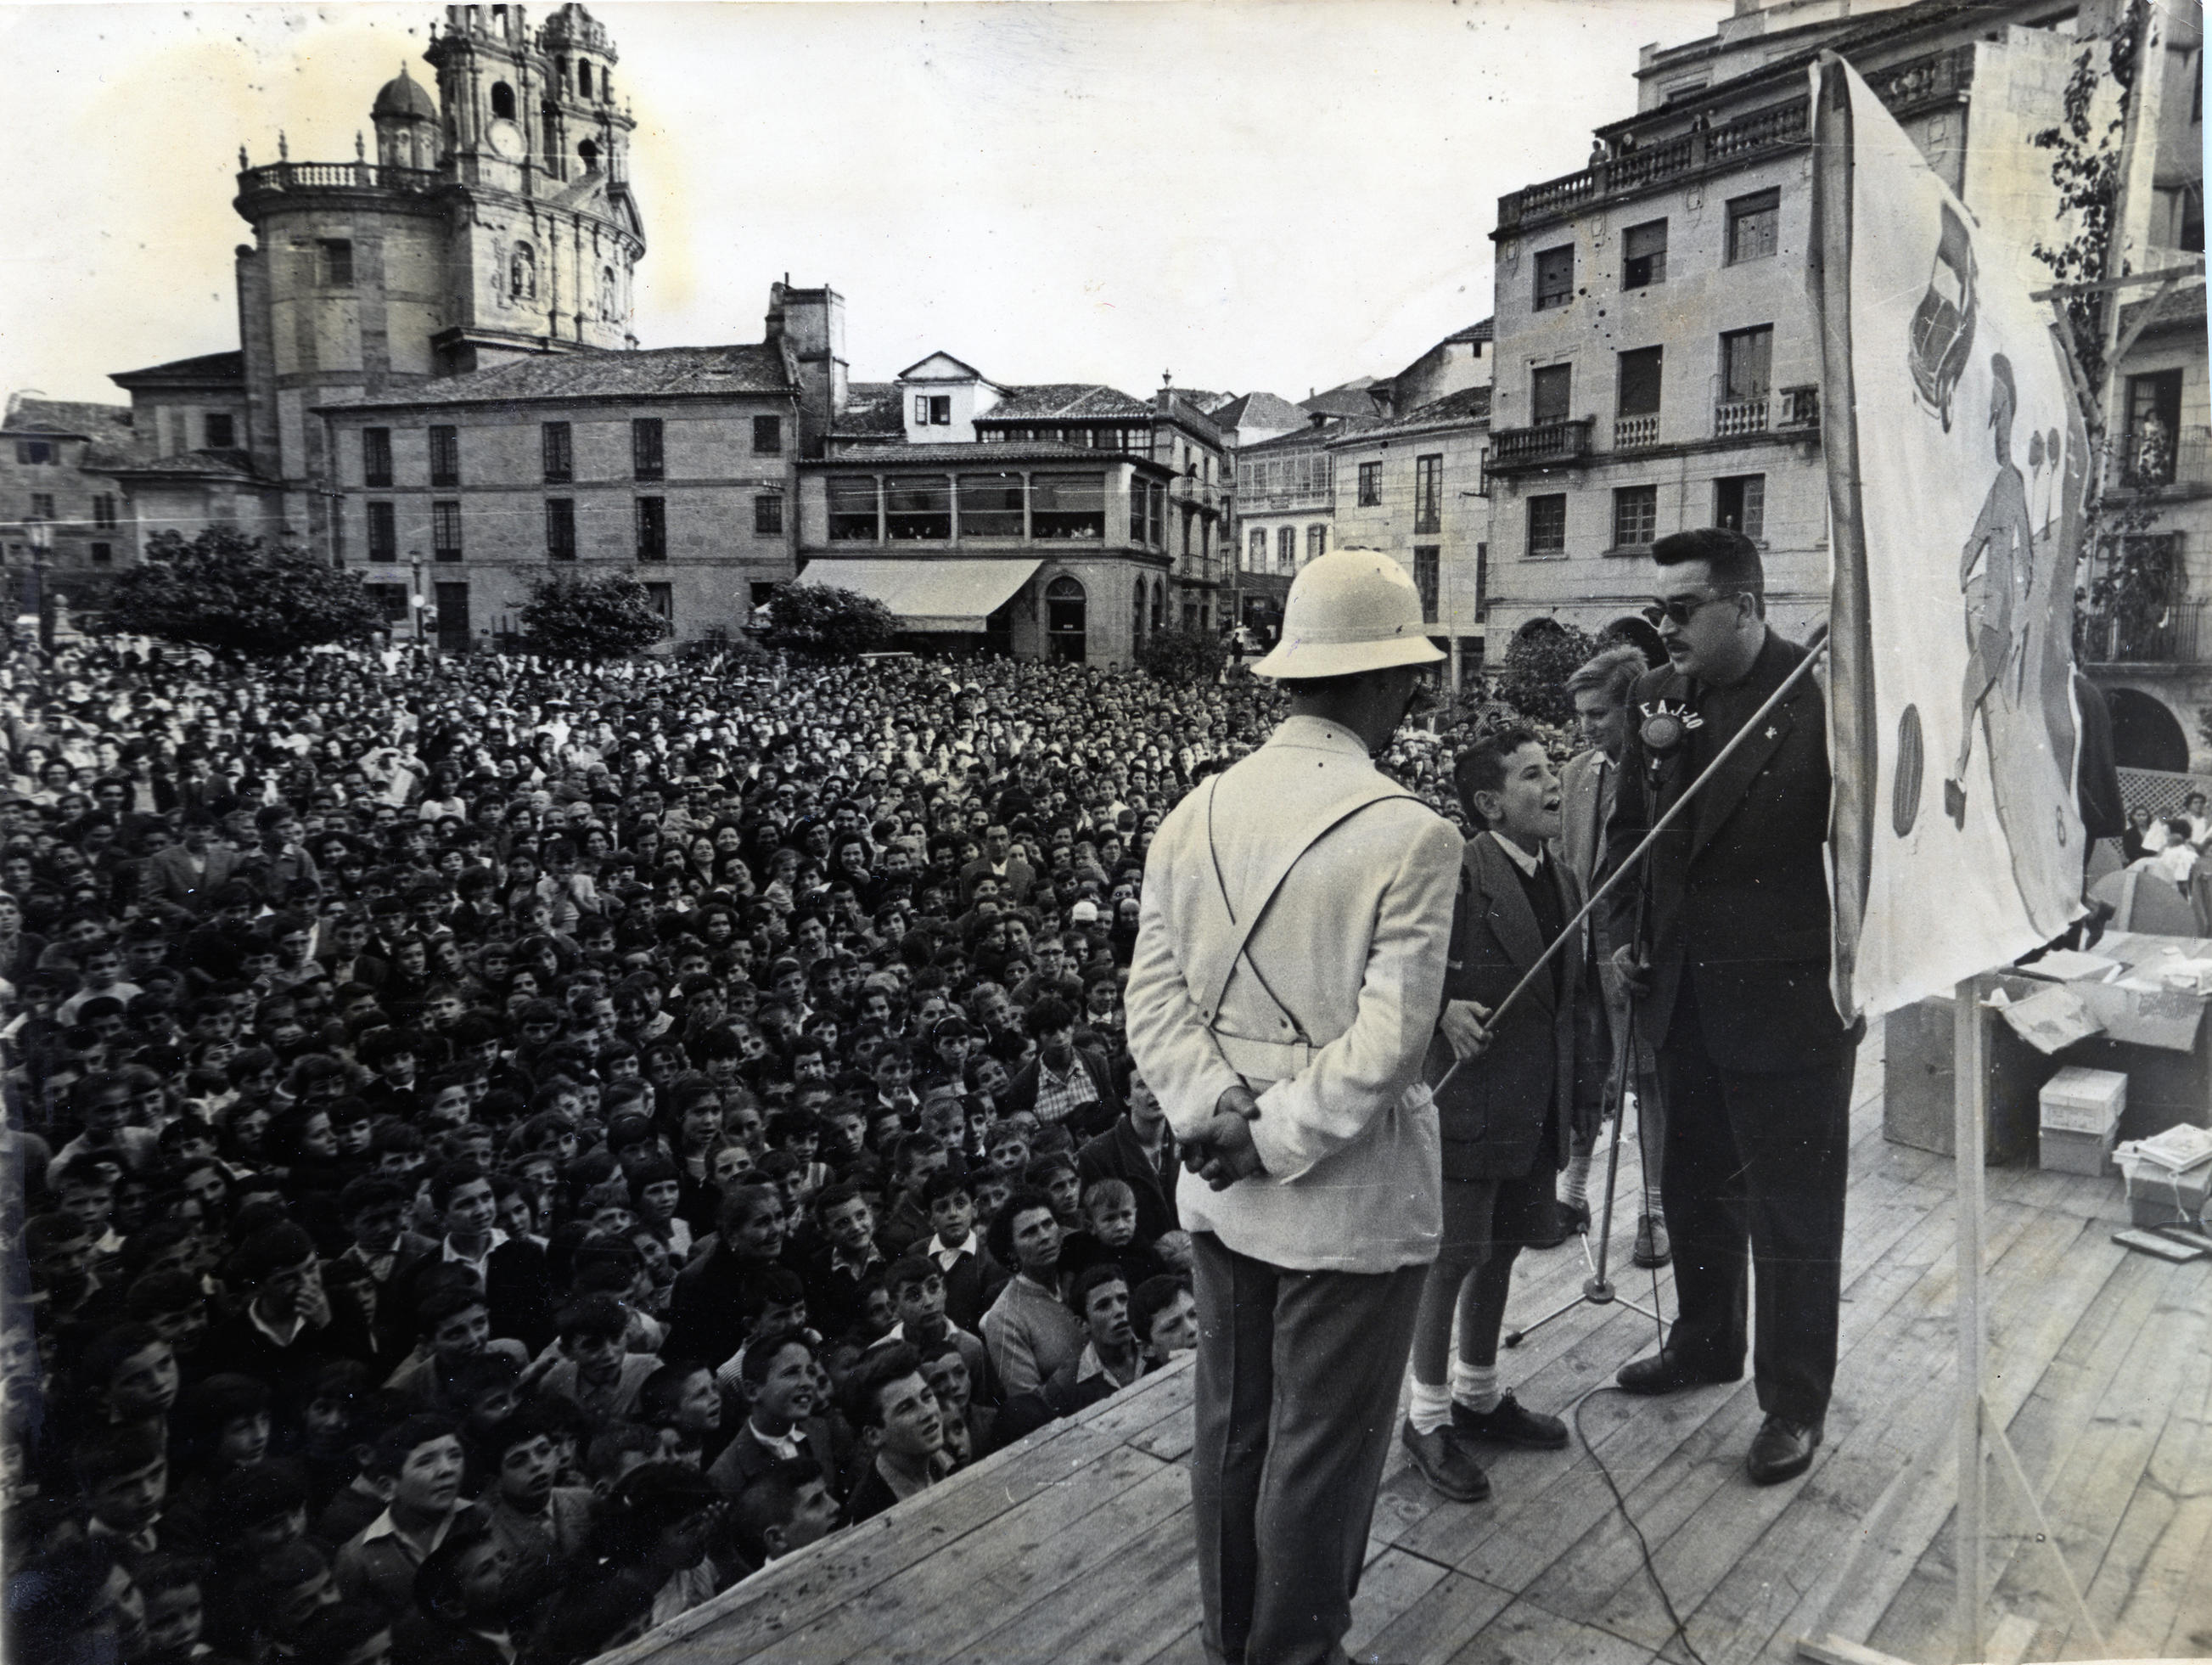 Campaña Prudencia e cortesía na estrada, acto en Pontevedra, ca. 1958